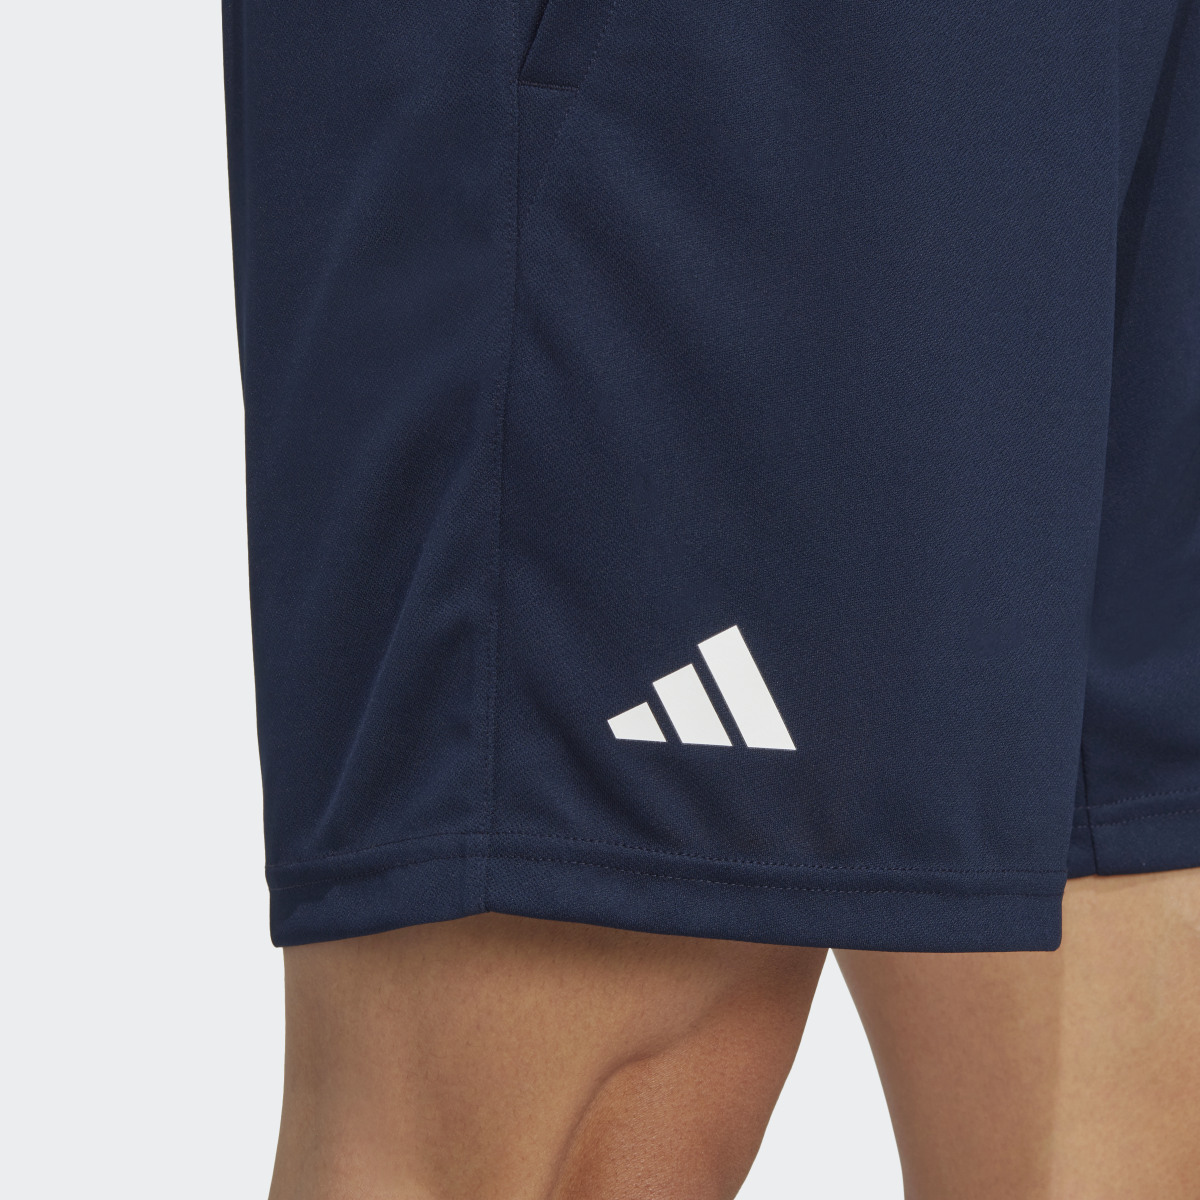 Adidas HEAT.RDY Knit Tennis Shorts. 5